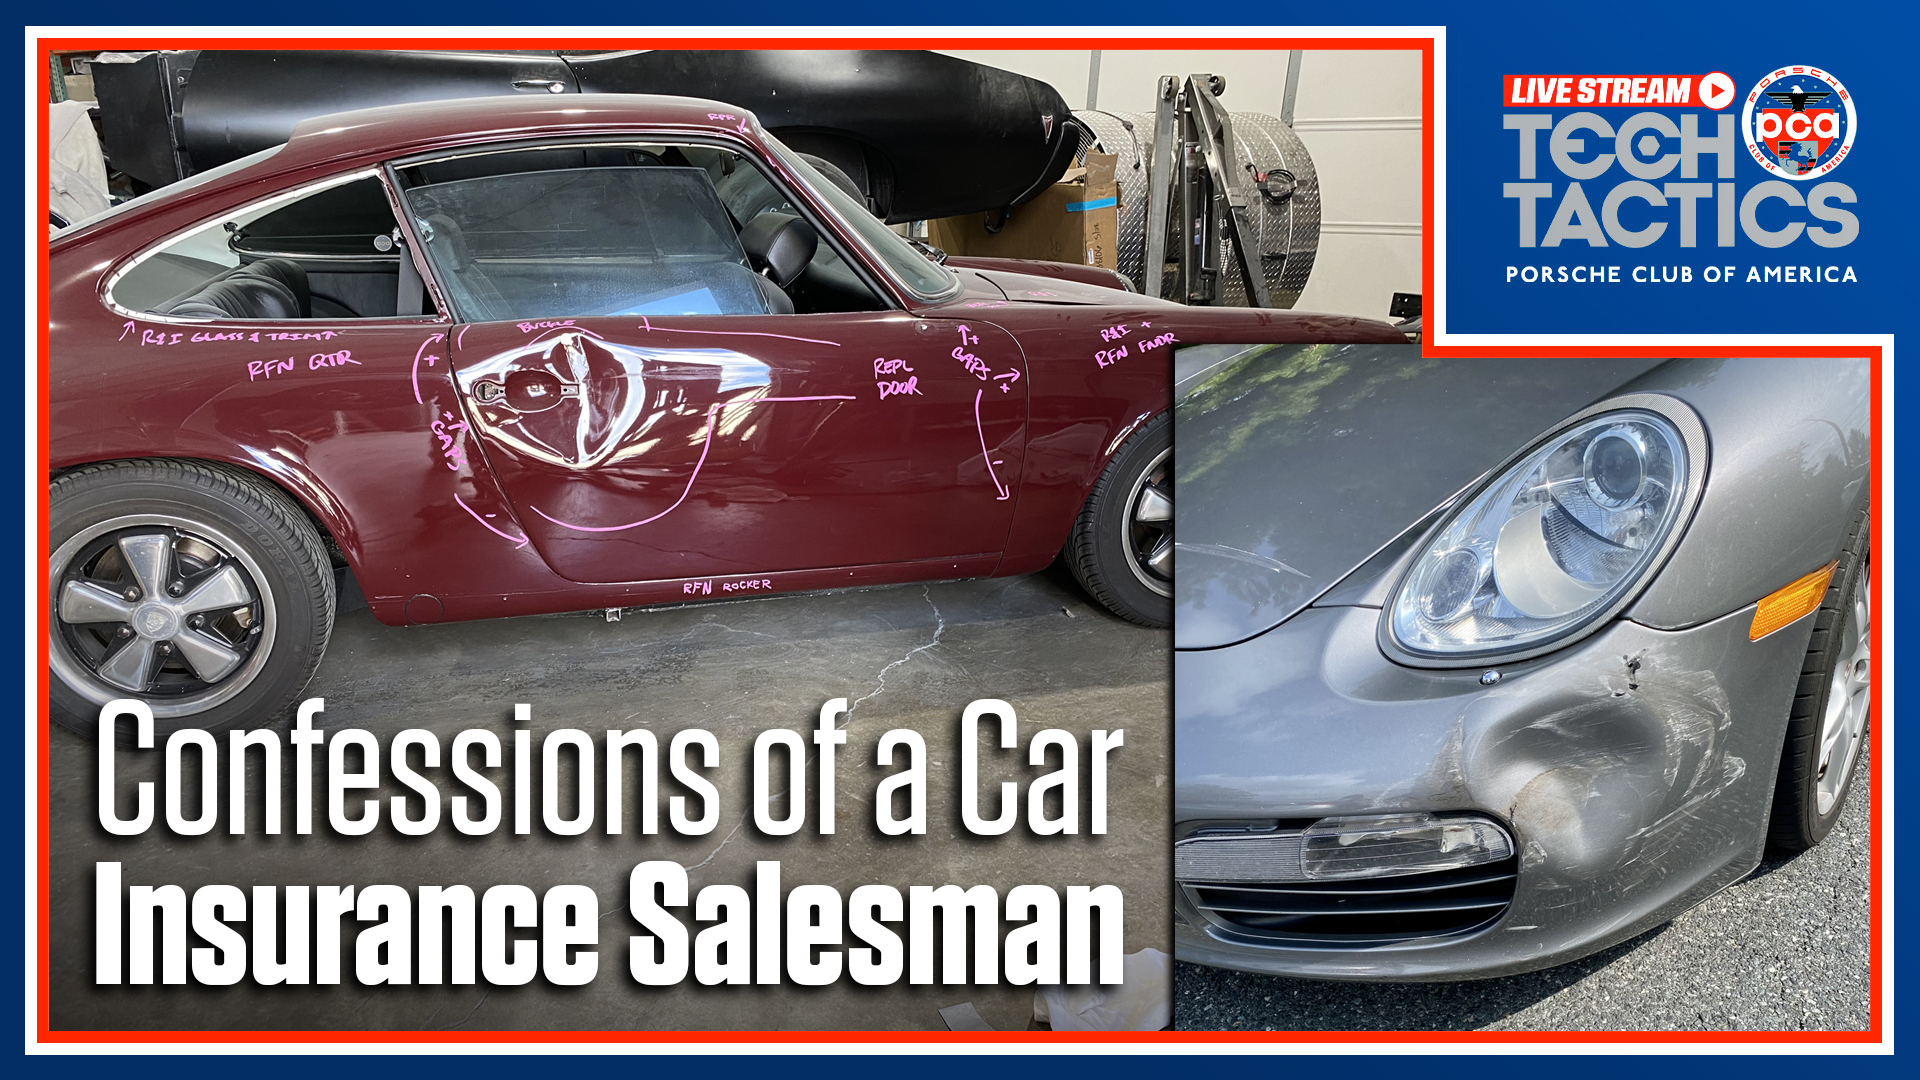 Porsche Club of America - Confessions of a Car Insurance Salesman | Tech Tactics Live